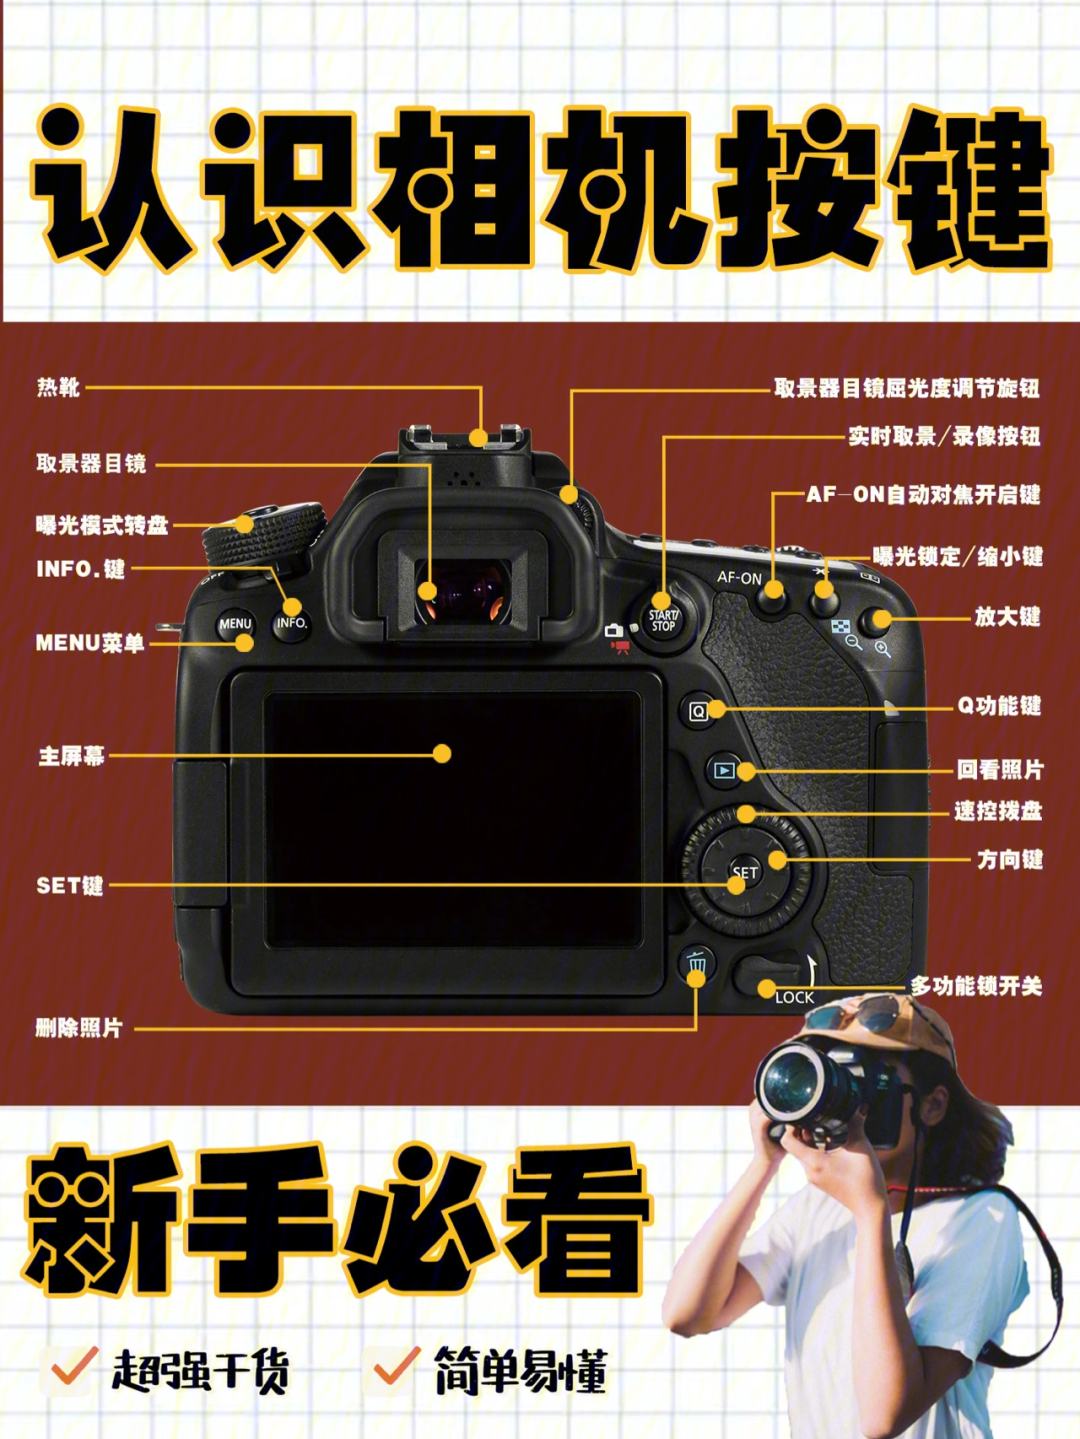 华为照相机专业教程图片